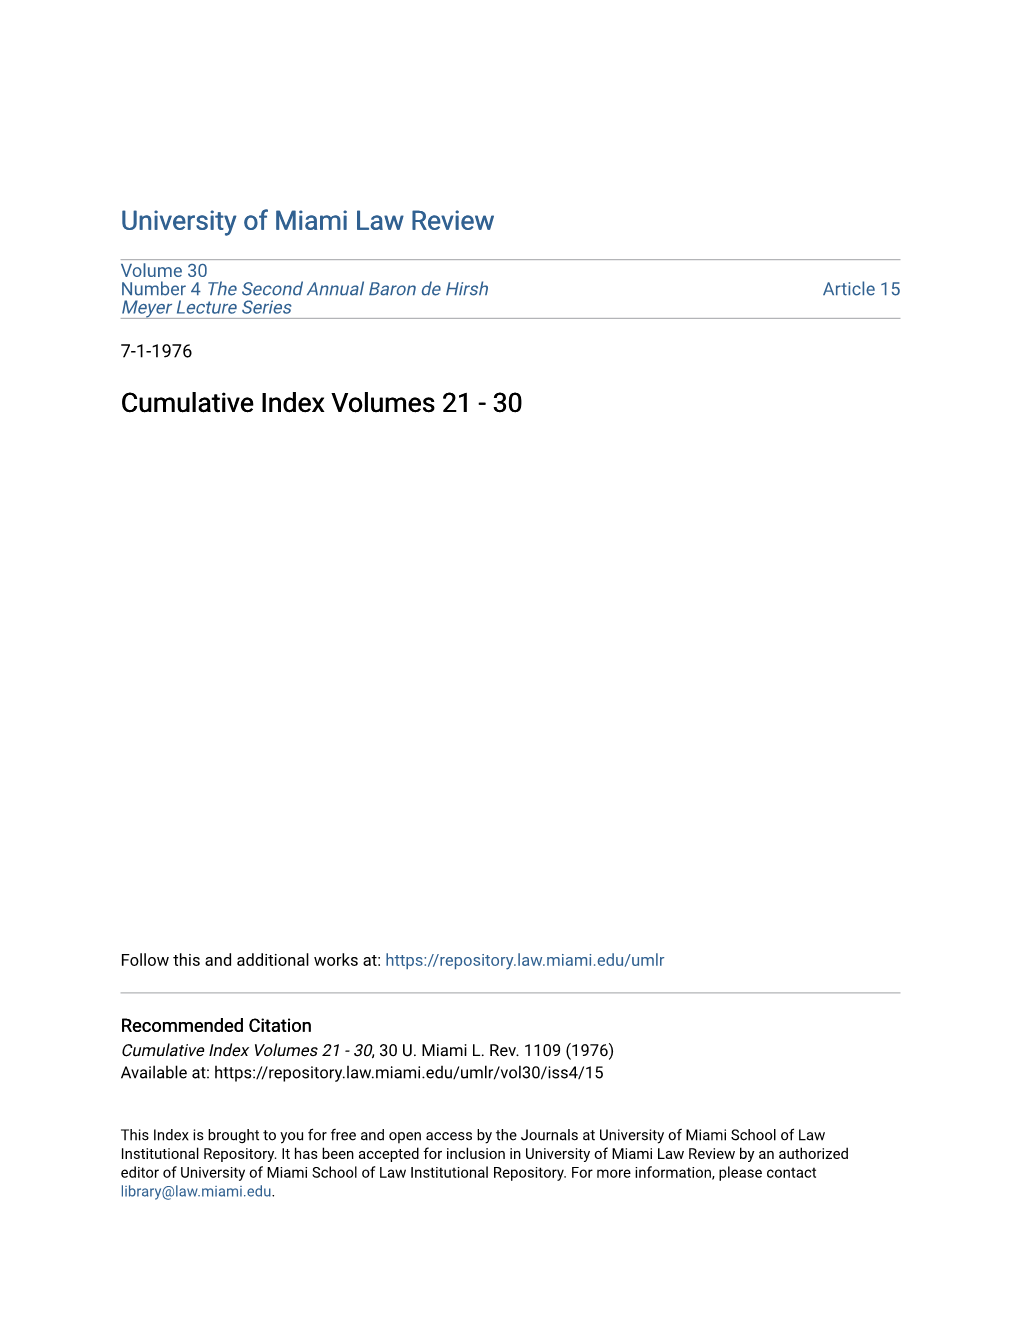 Cumulative Index Volumes 21 - 30